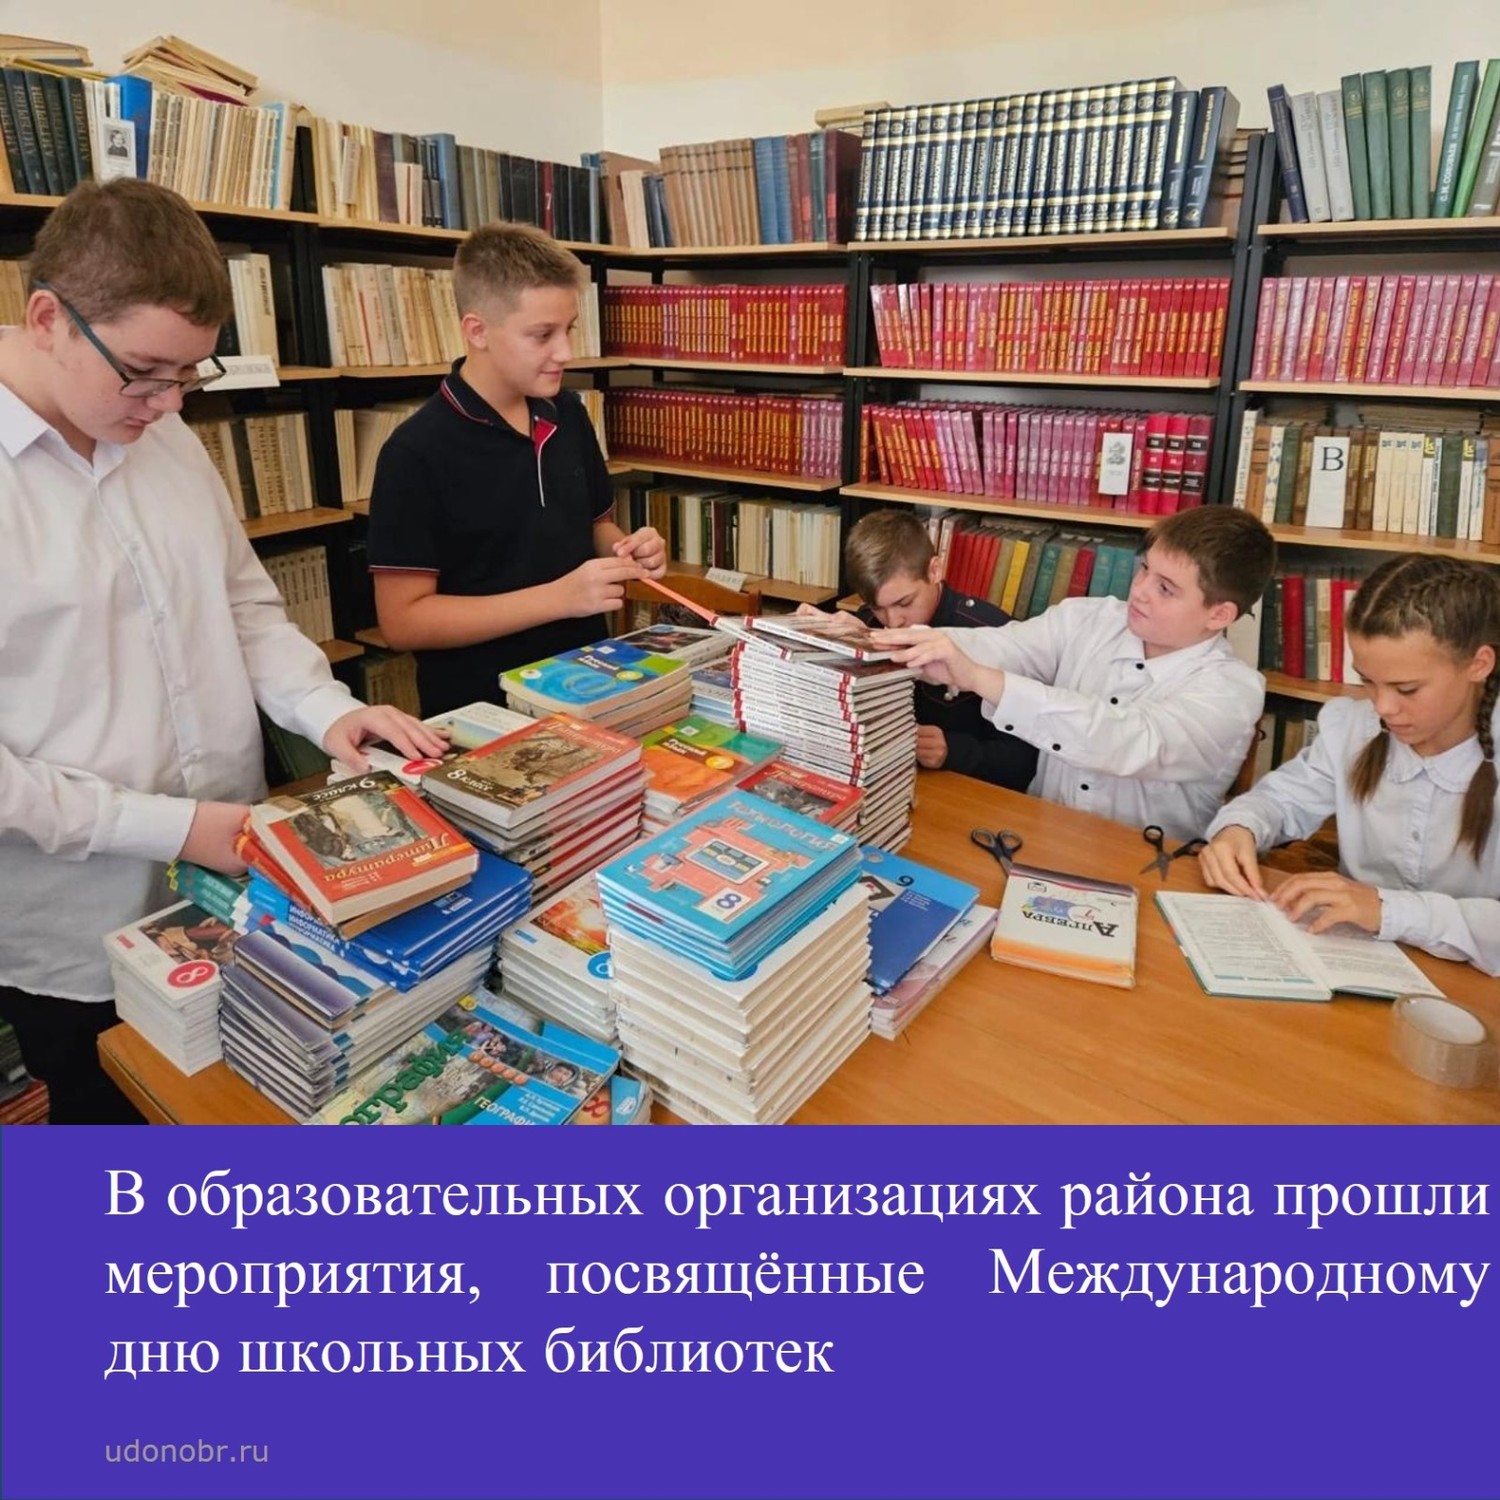 В образовательных организациях района прошли мероприятия, посвященные Международному дню школьных библиотек